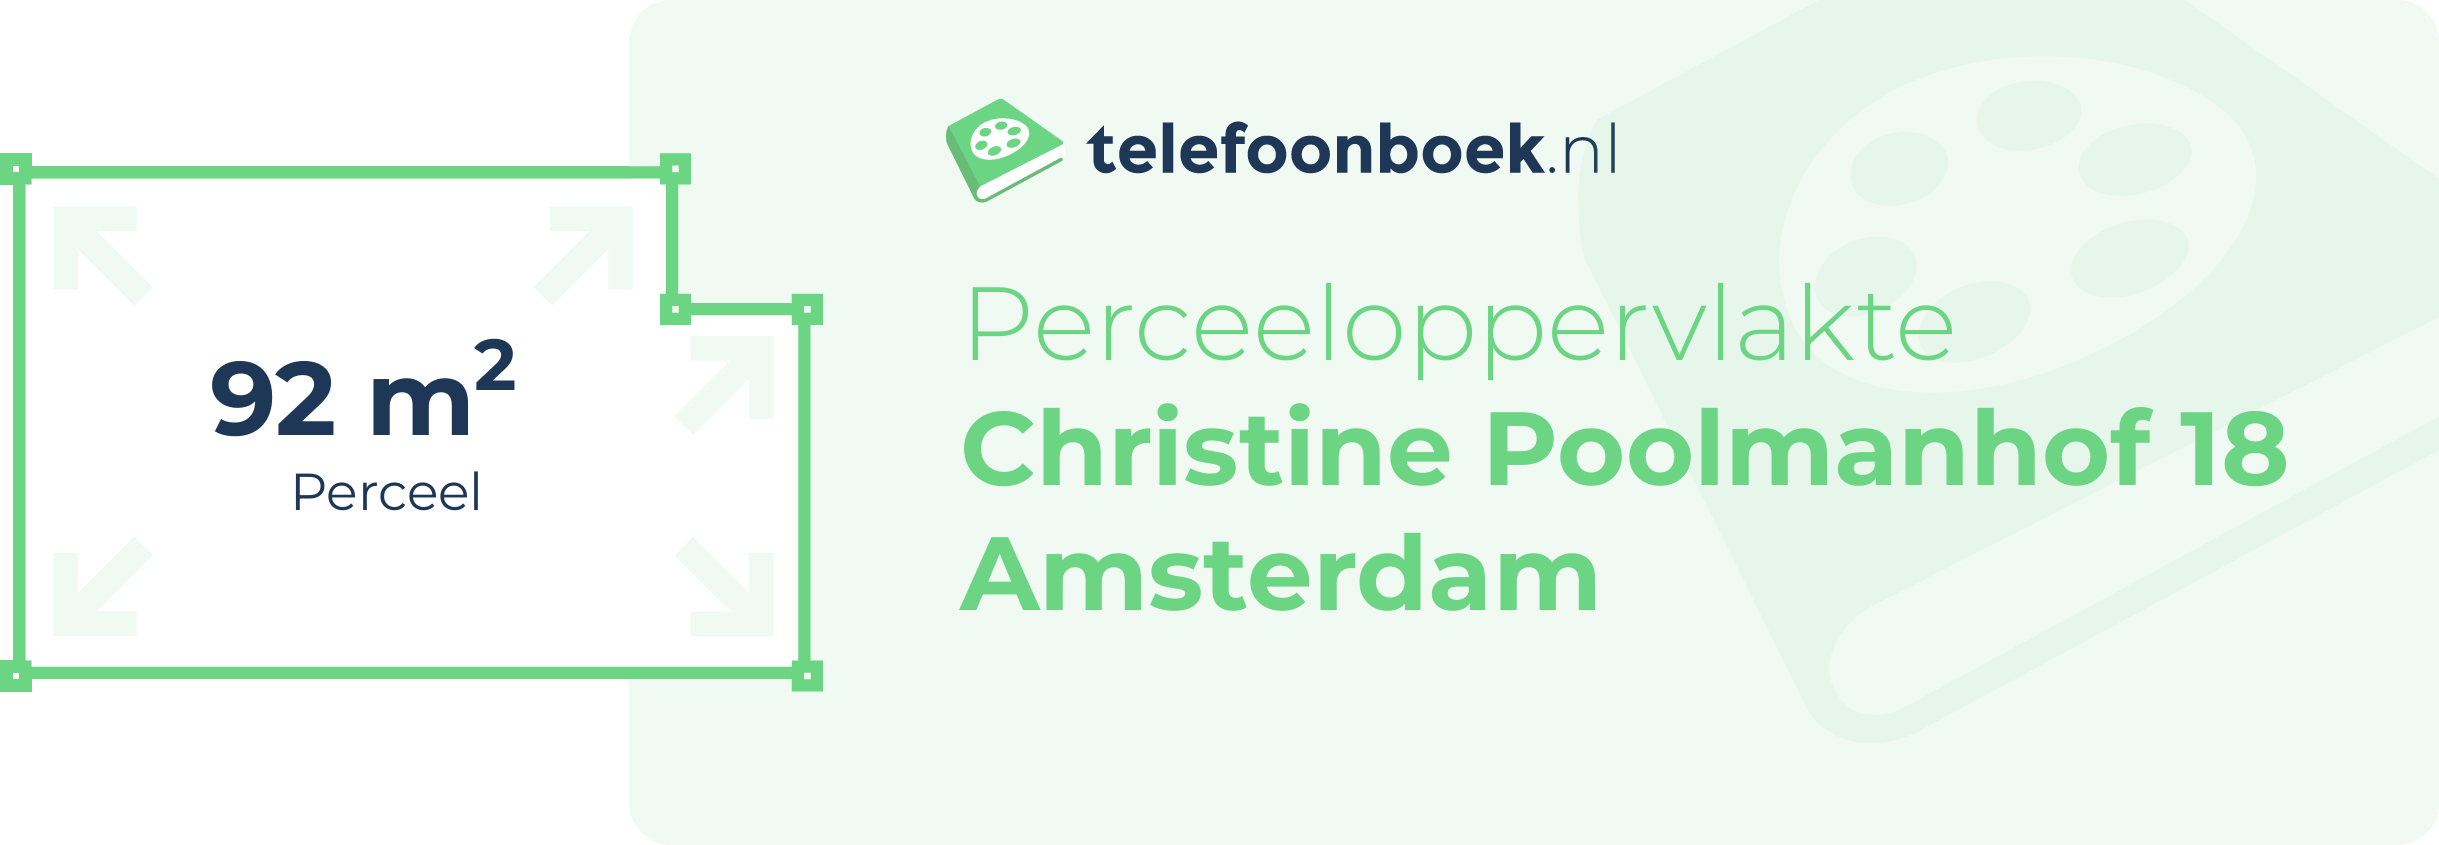 Perceeloppervlakte Christine Poolmanhof 18 Amsterdam